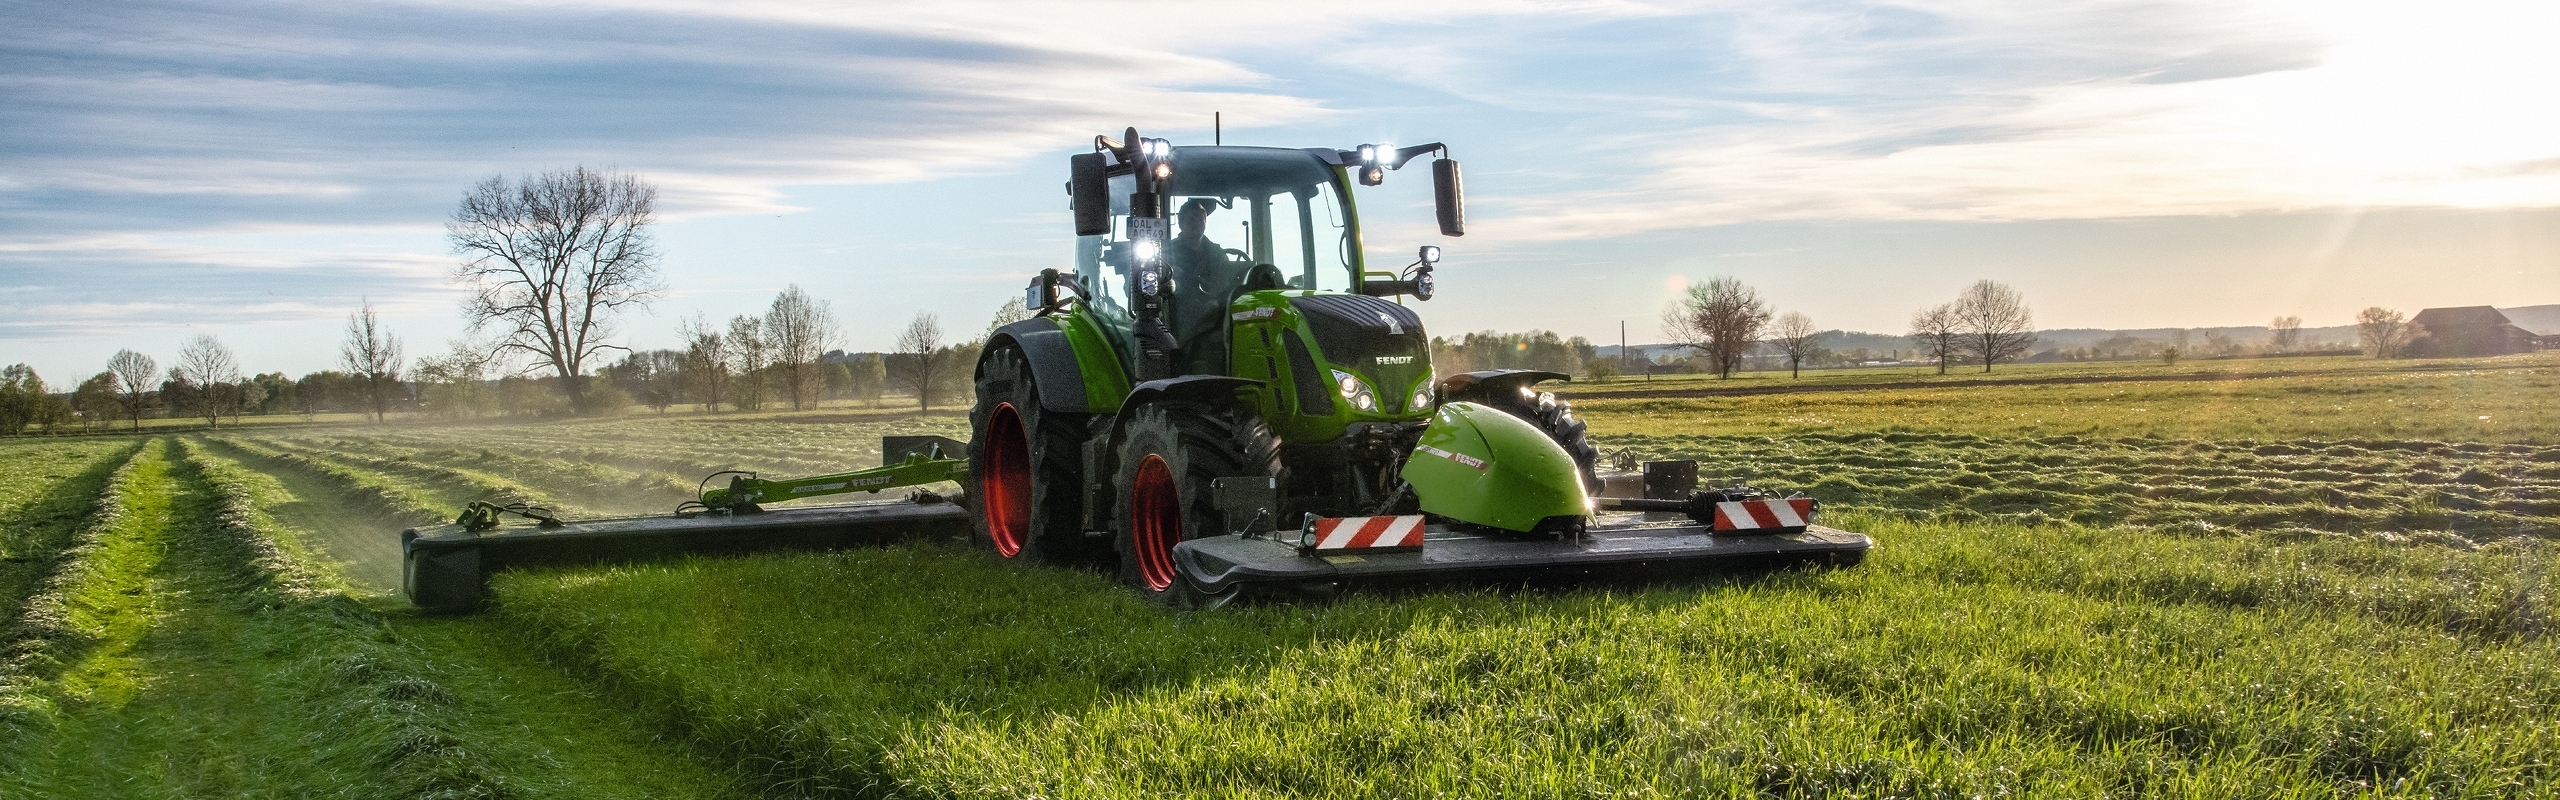 Ein Grüner Fendt Traktor mit Slicer Mähkombination während der Grünland-Ernte